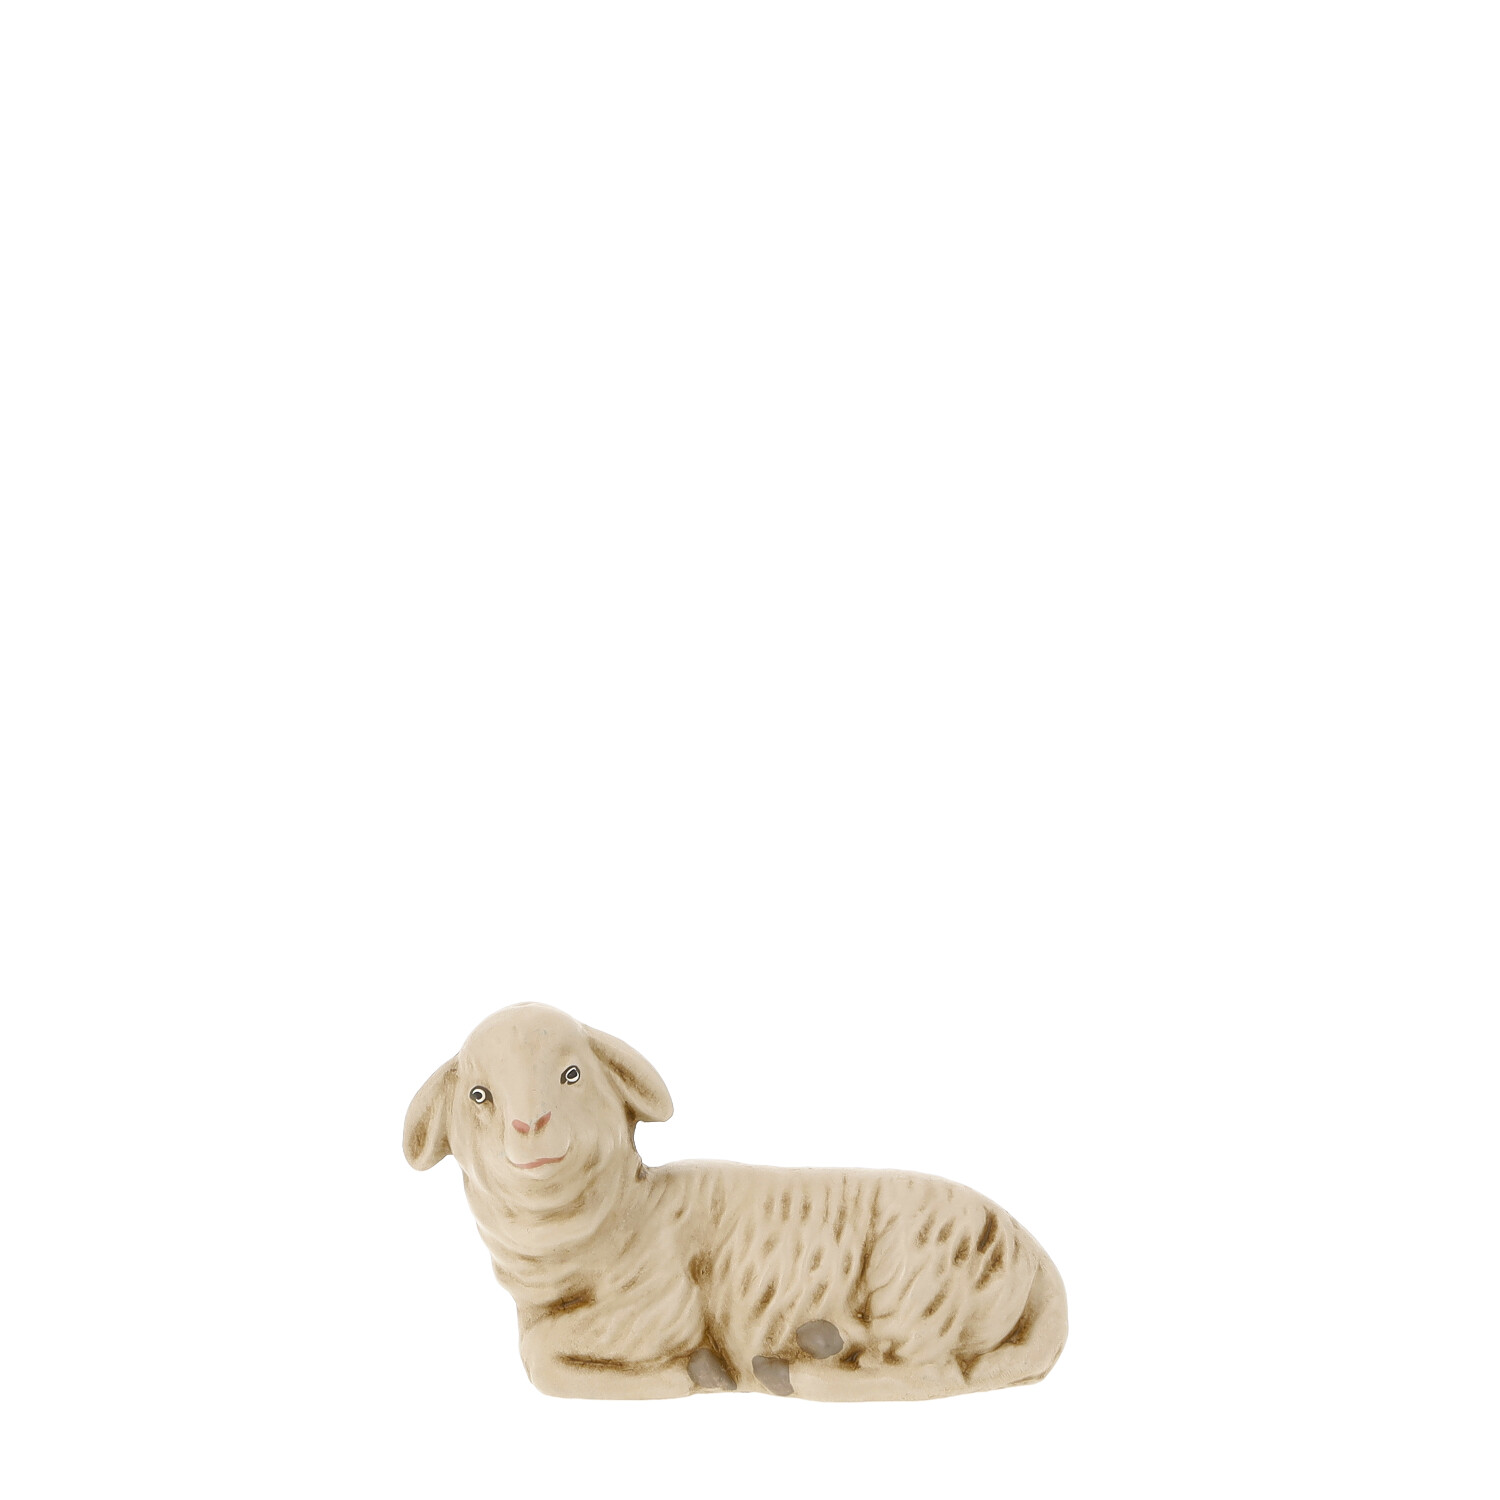 Schaf liegend, nach links blickend, zu 14cm Figuren passend